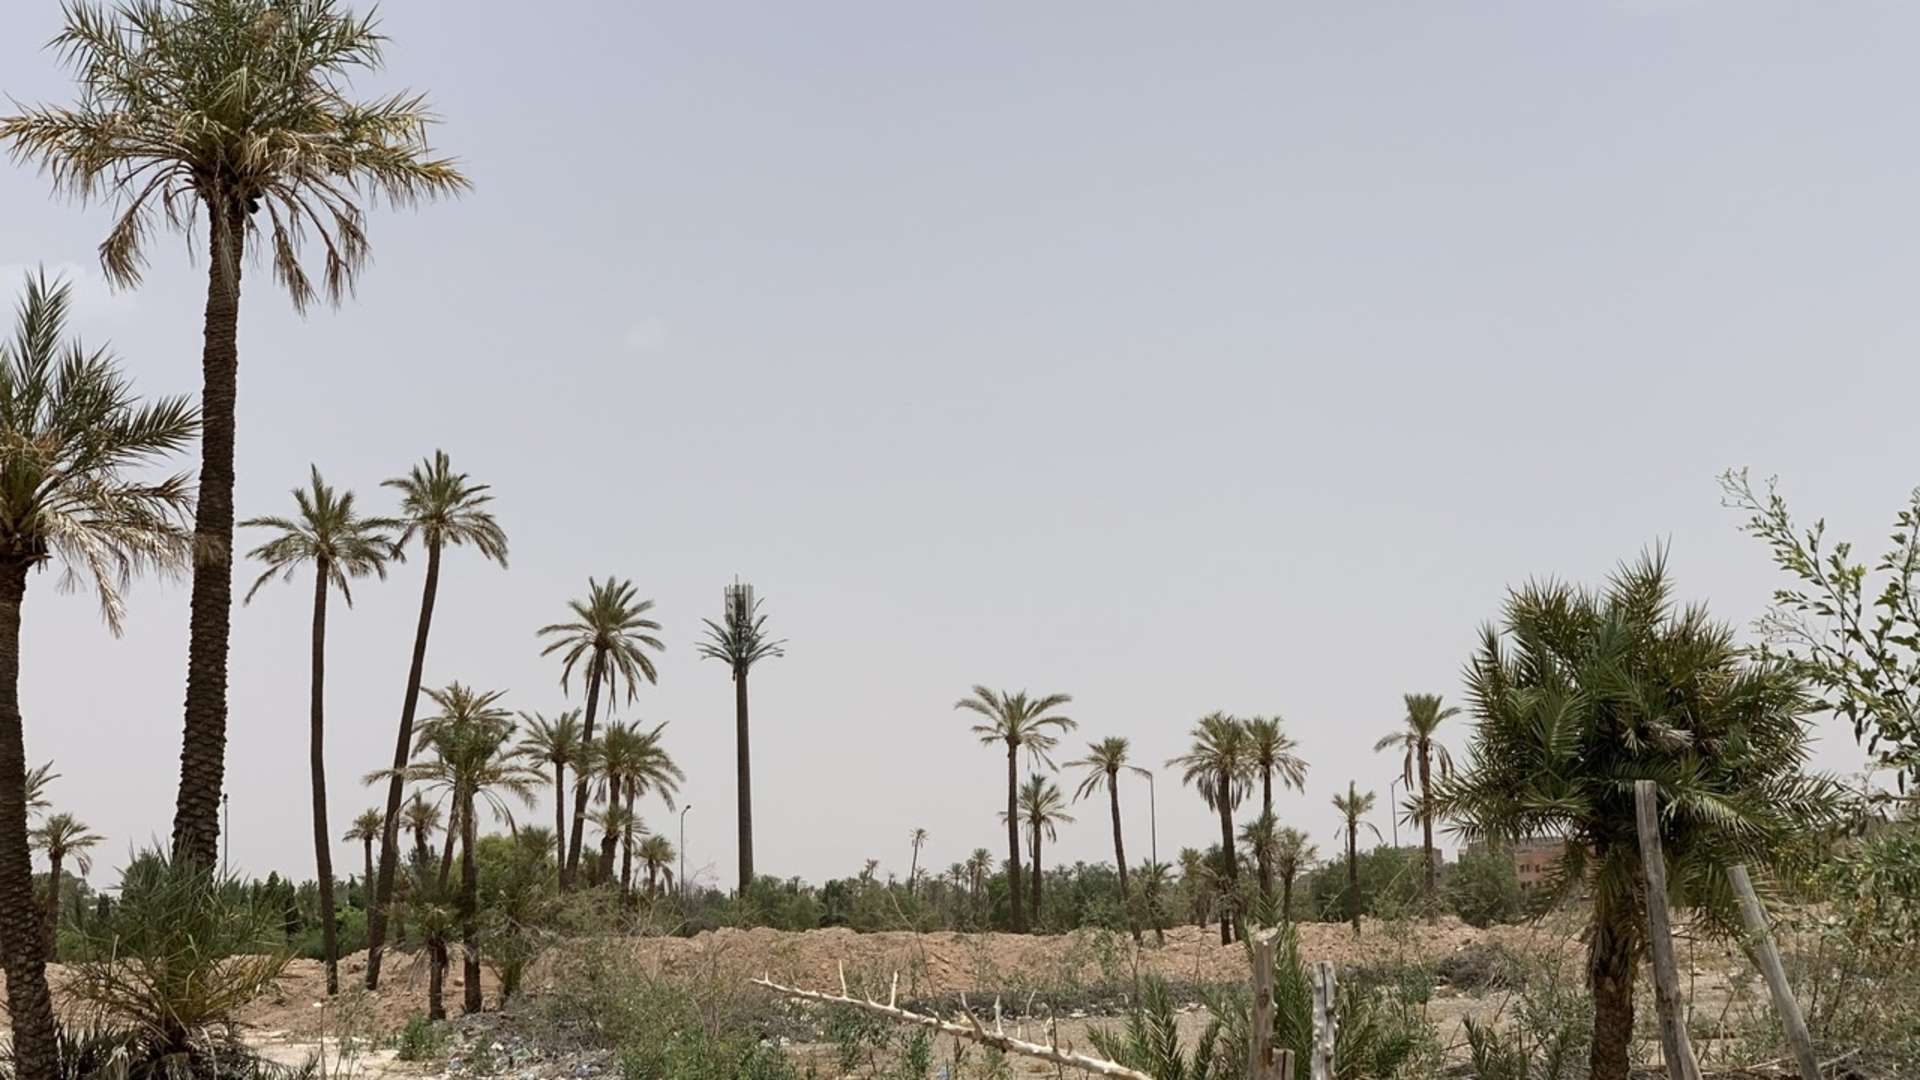 Vente,Terrains & Fermes,Terrain à la vente à Boumesmar. Surface de 9162.0 m²,Marrakech,Daoudiat